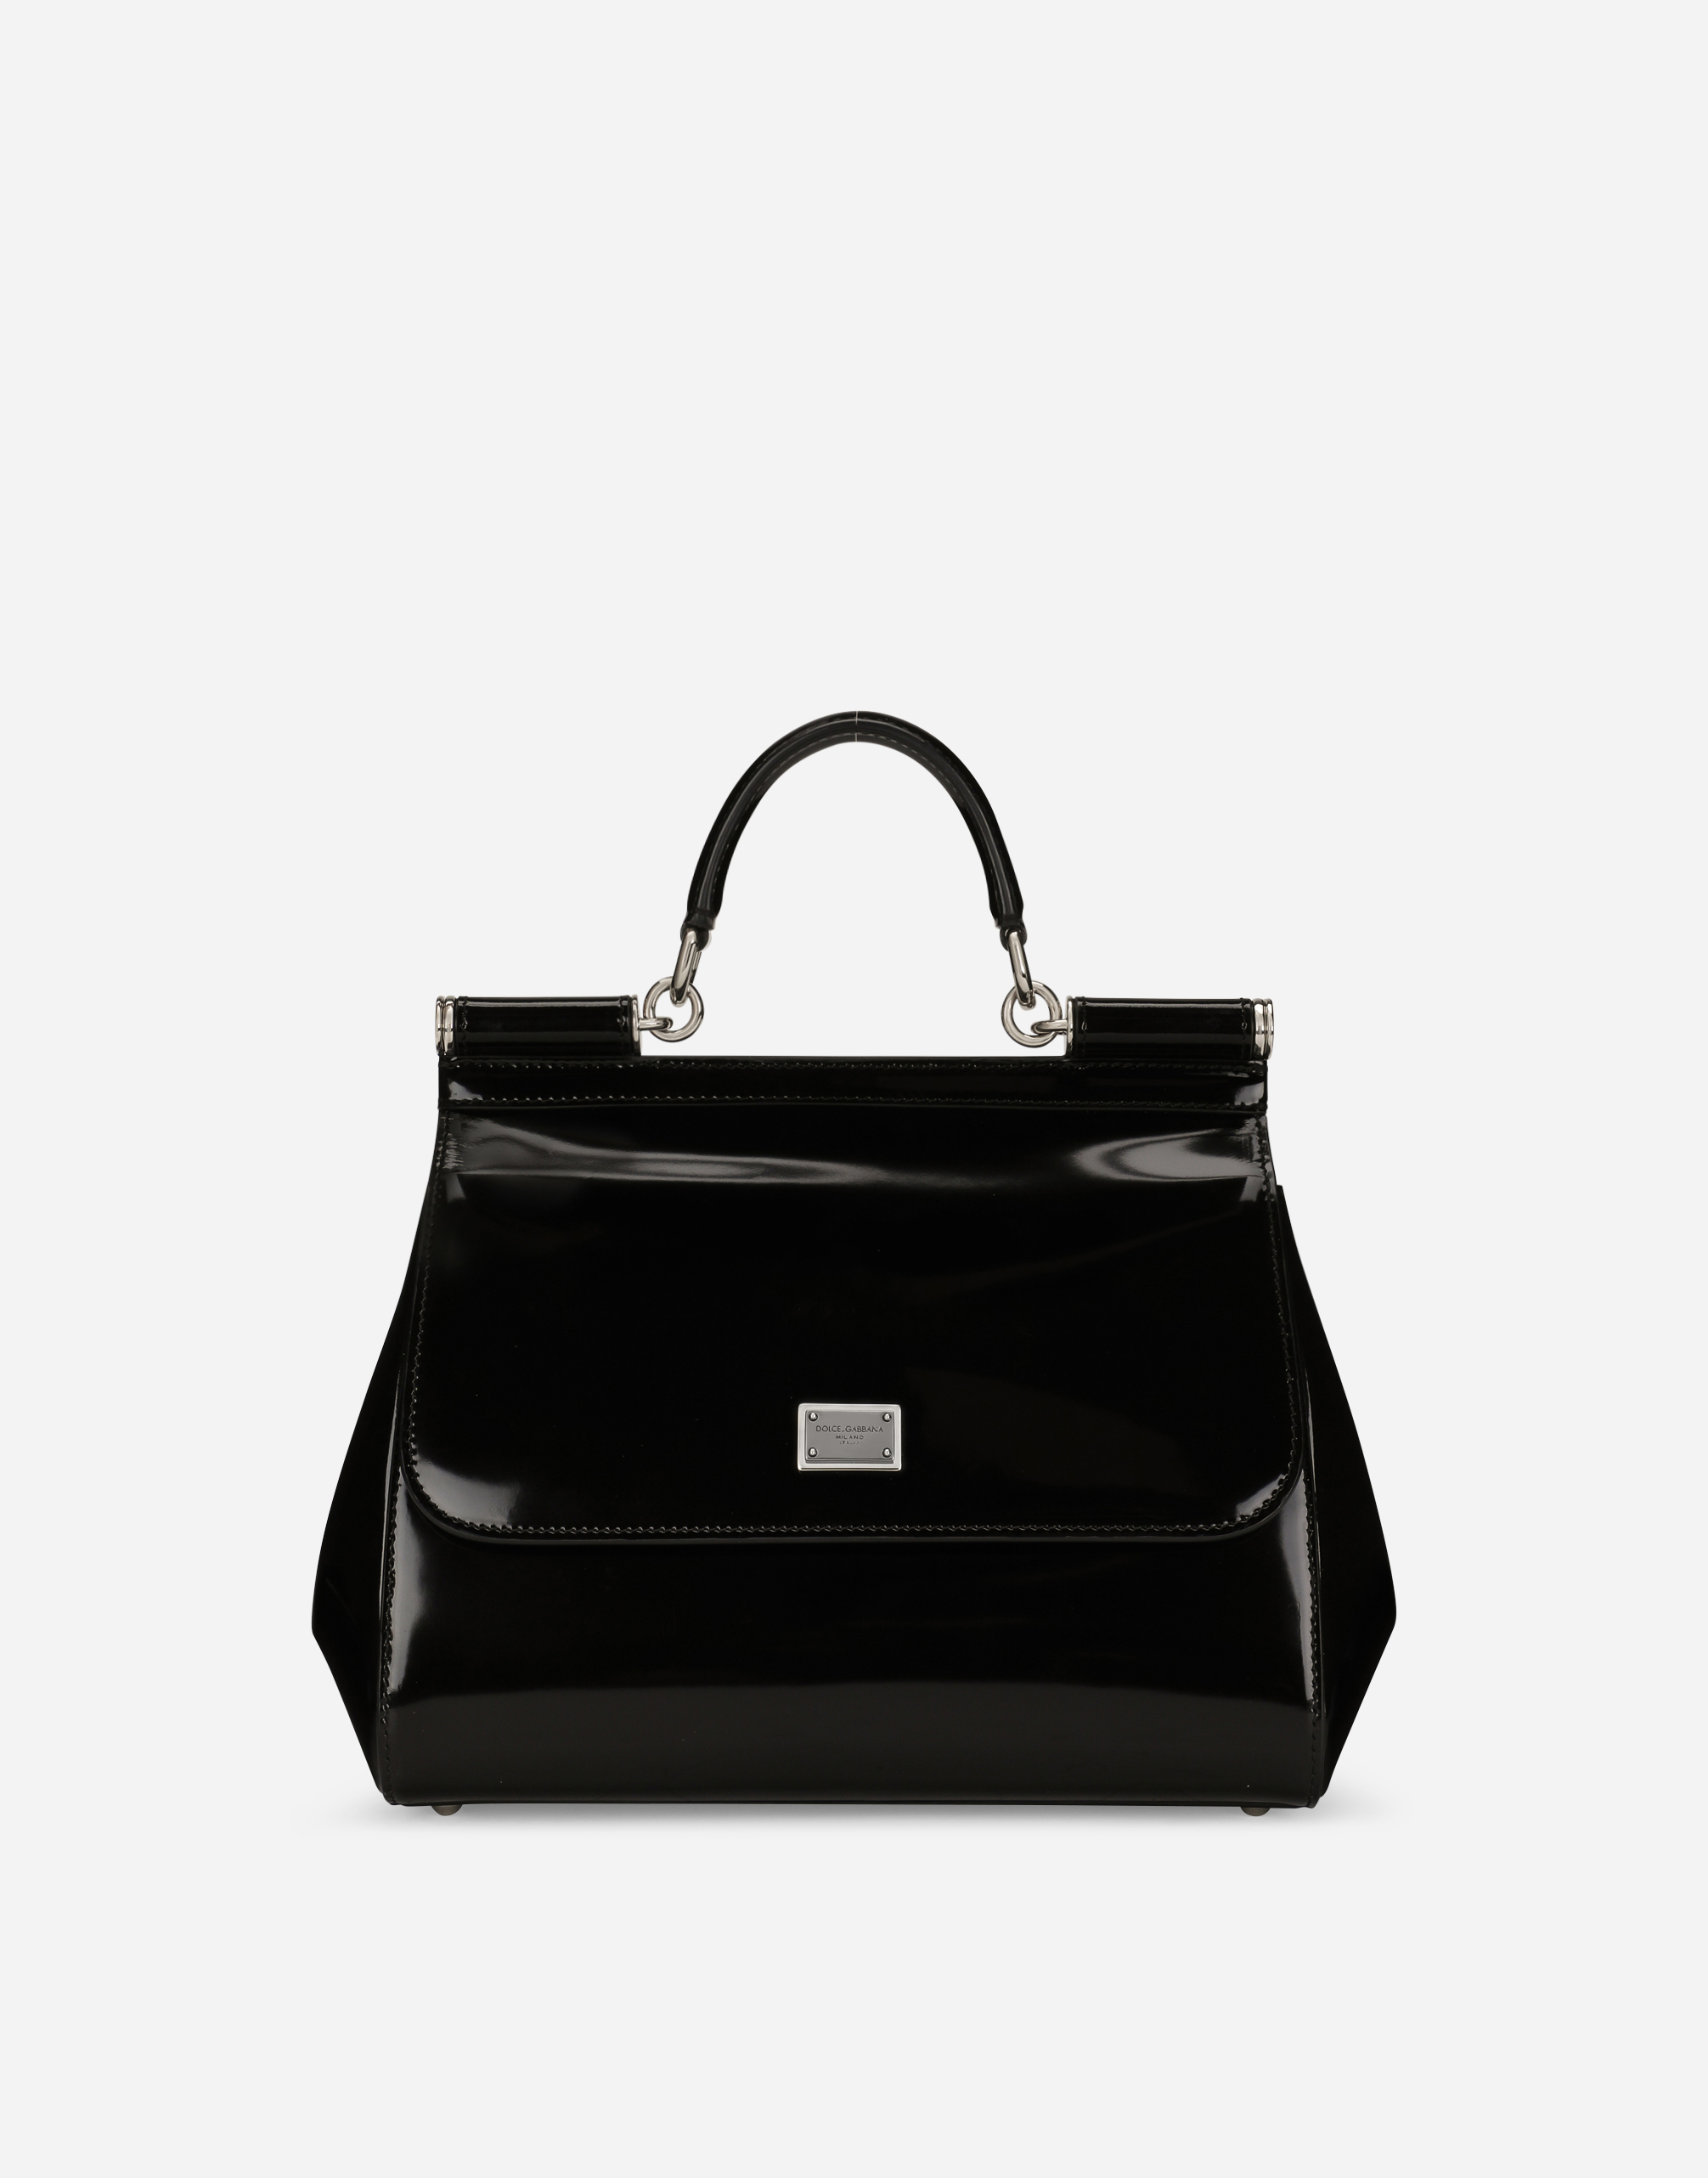 KIM DOLCE&GABBANA Large Sicily handbag in Black